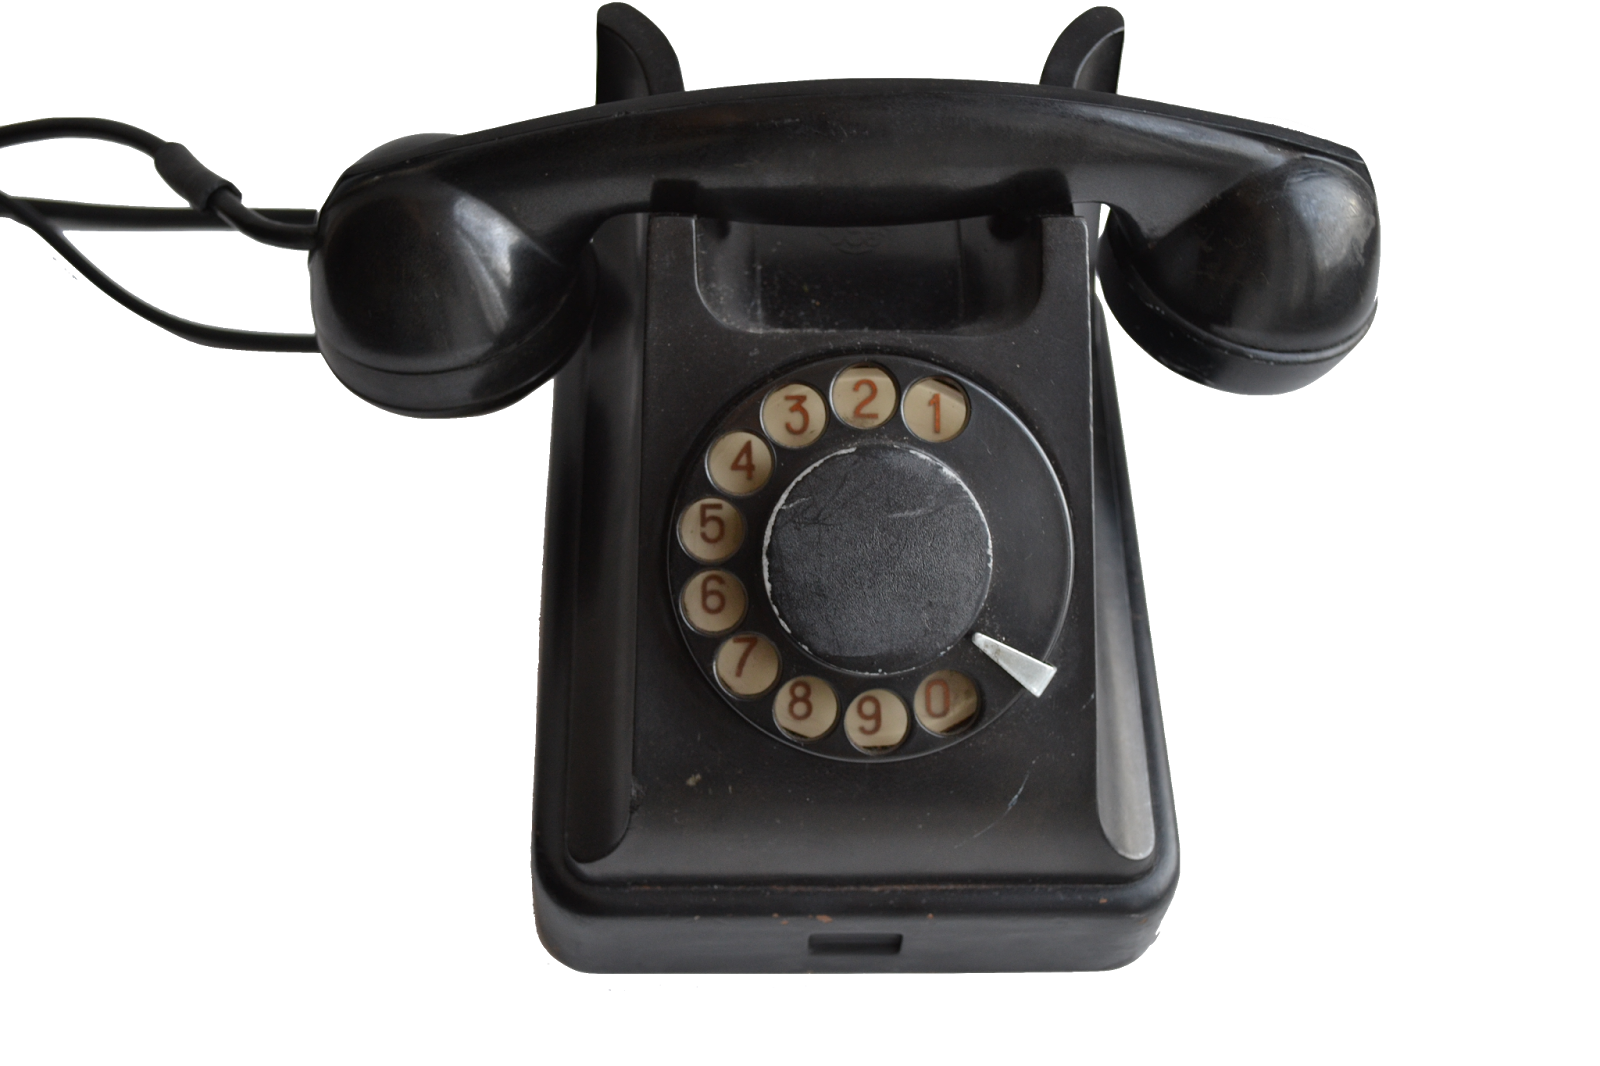 2 20 18 телефон. Телефонный аппарат 20 века. Телефонный аппарат 19 века. Телефонный аппарат кнопочный. Телефон 19 века.